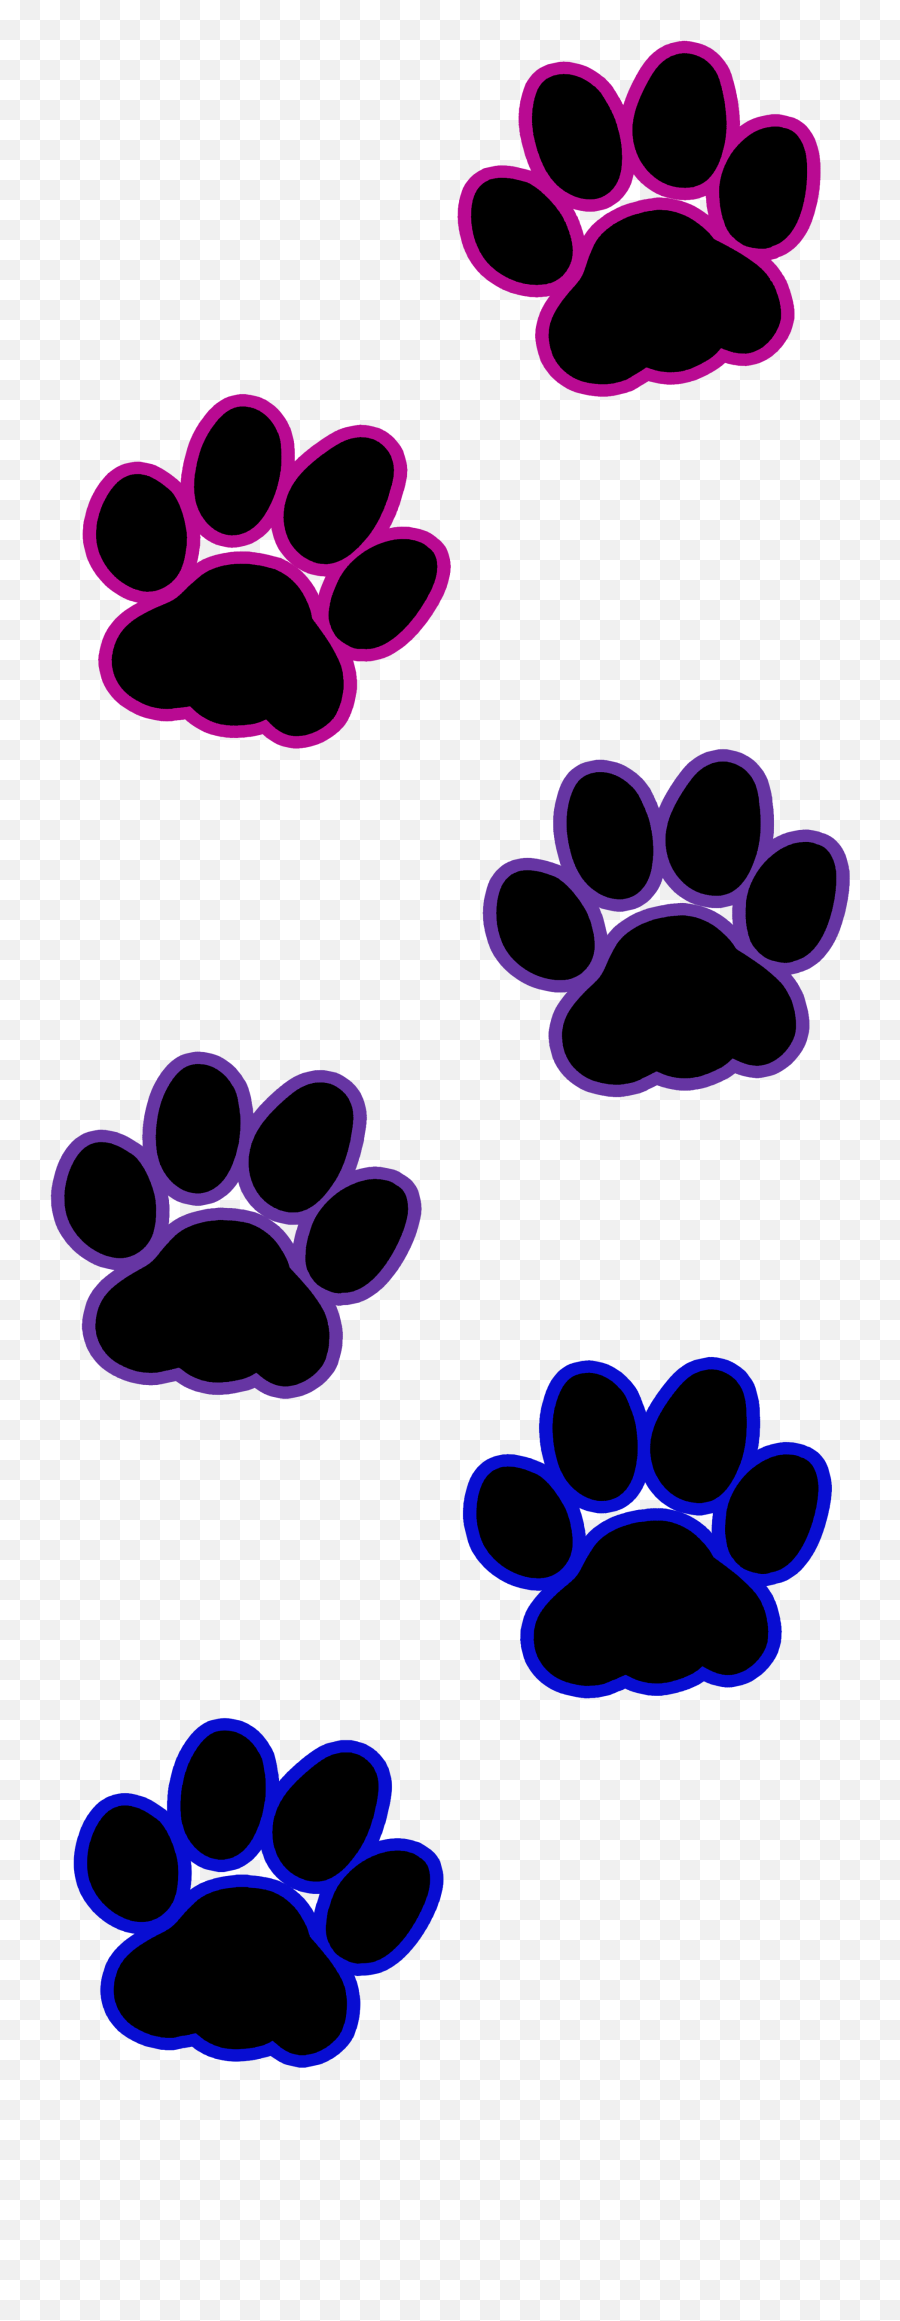 Pawprint Clipart Cat Pawprint Cat Transparent Free For - Transparent Background Paws Clipart Transparent Emoji,Bisexual Emoji